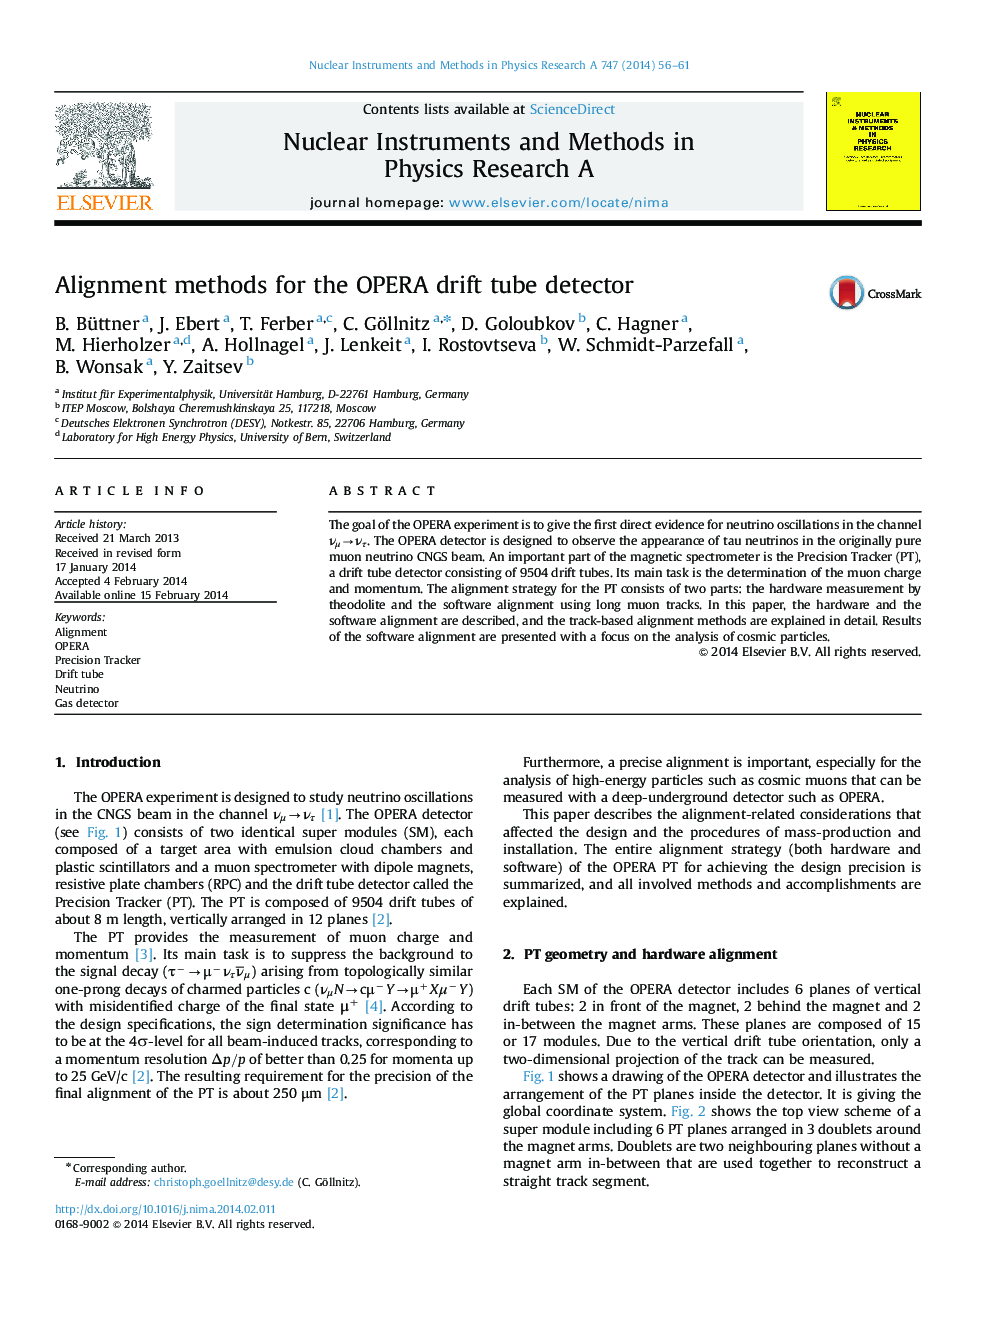 Alignment methods for the OPERA drift tube detector